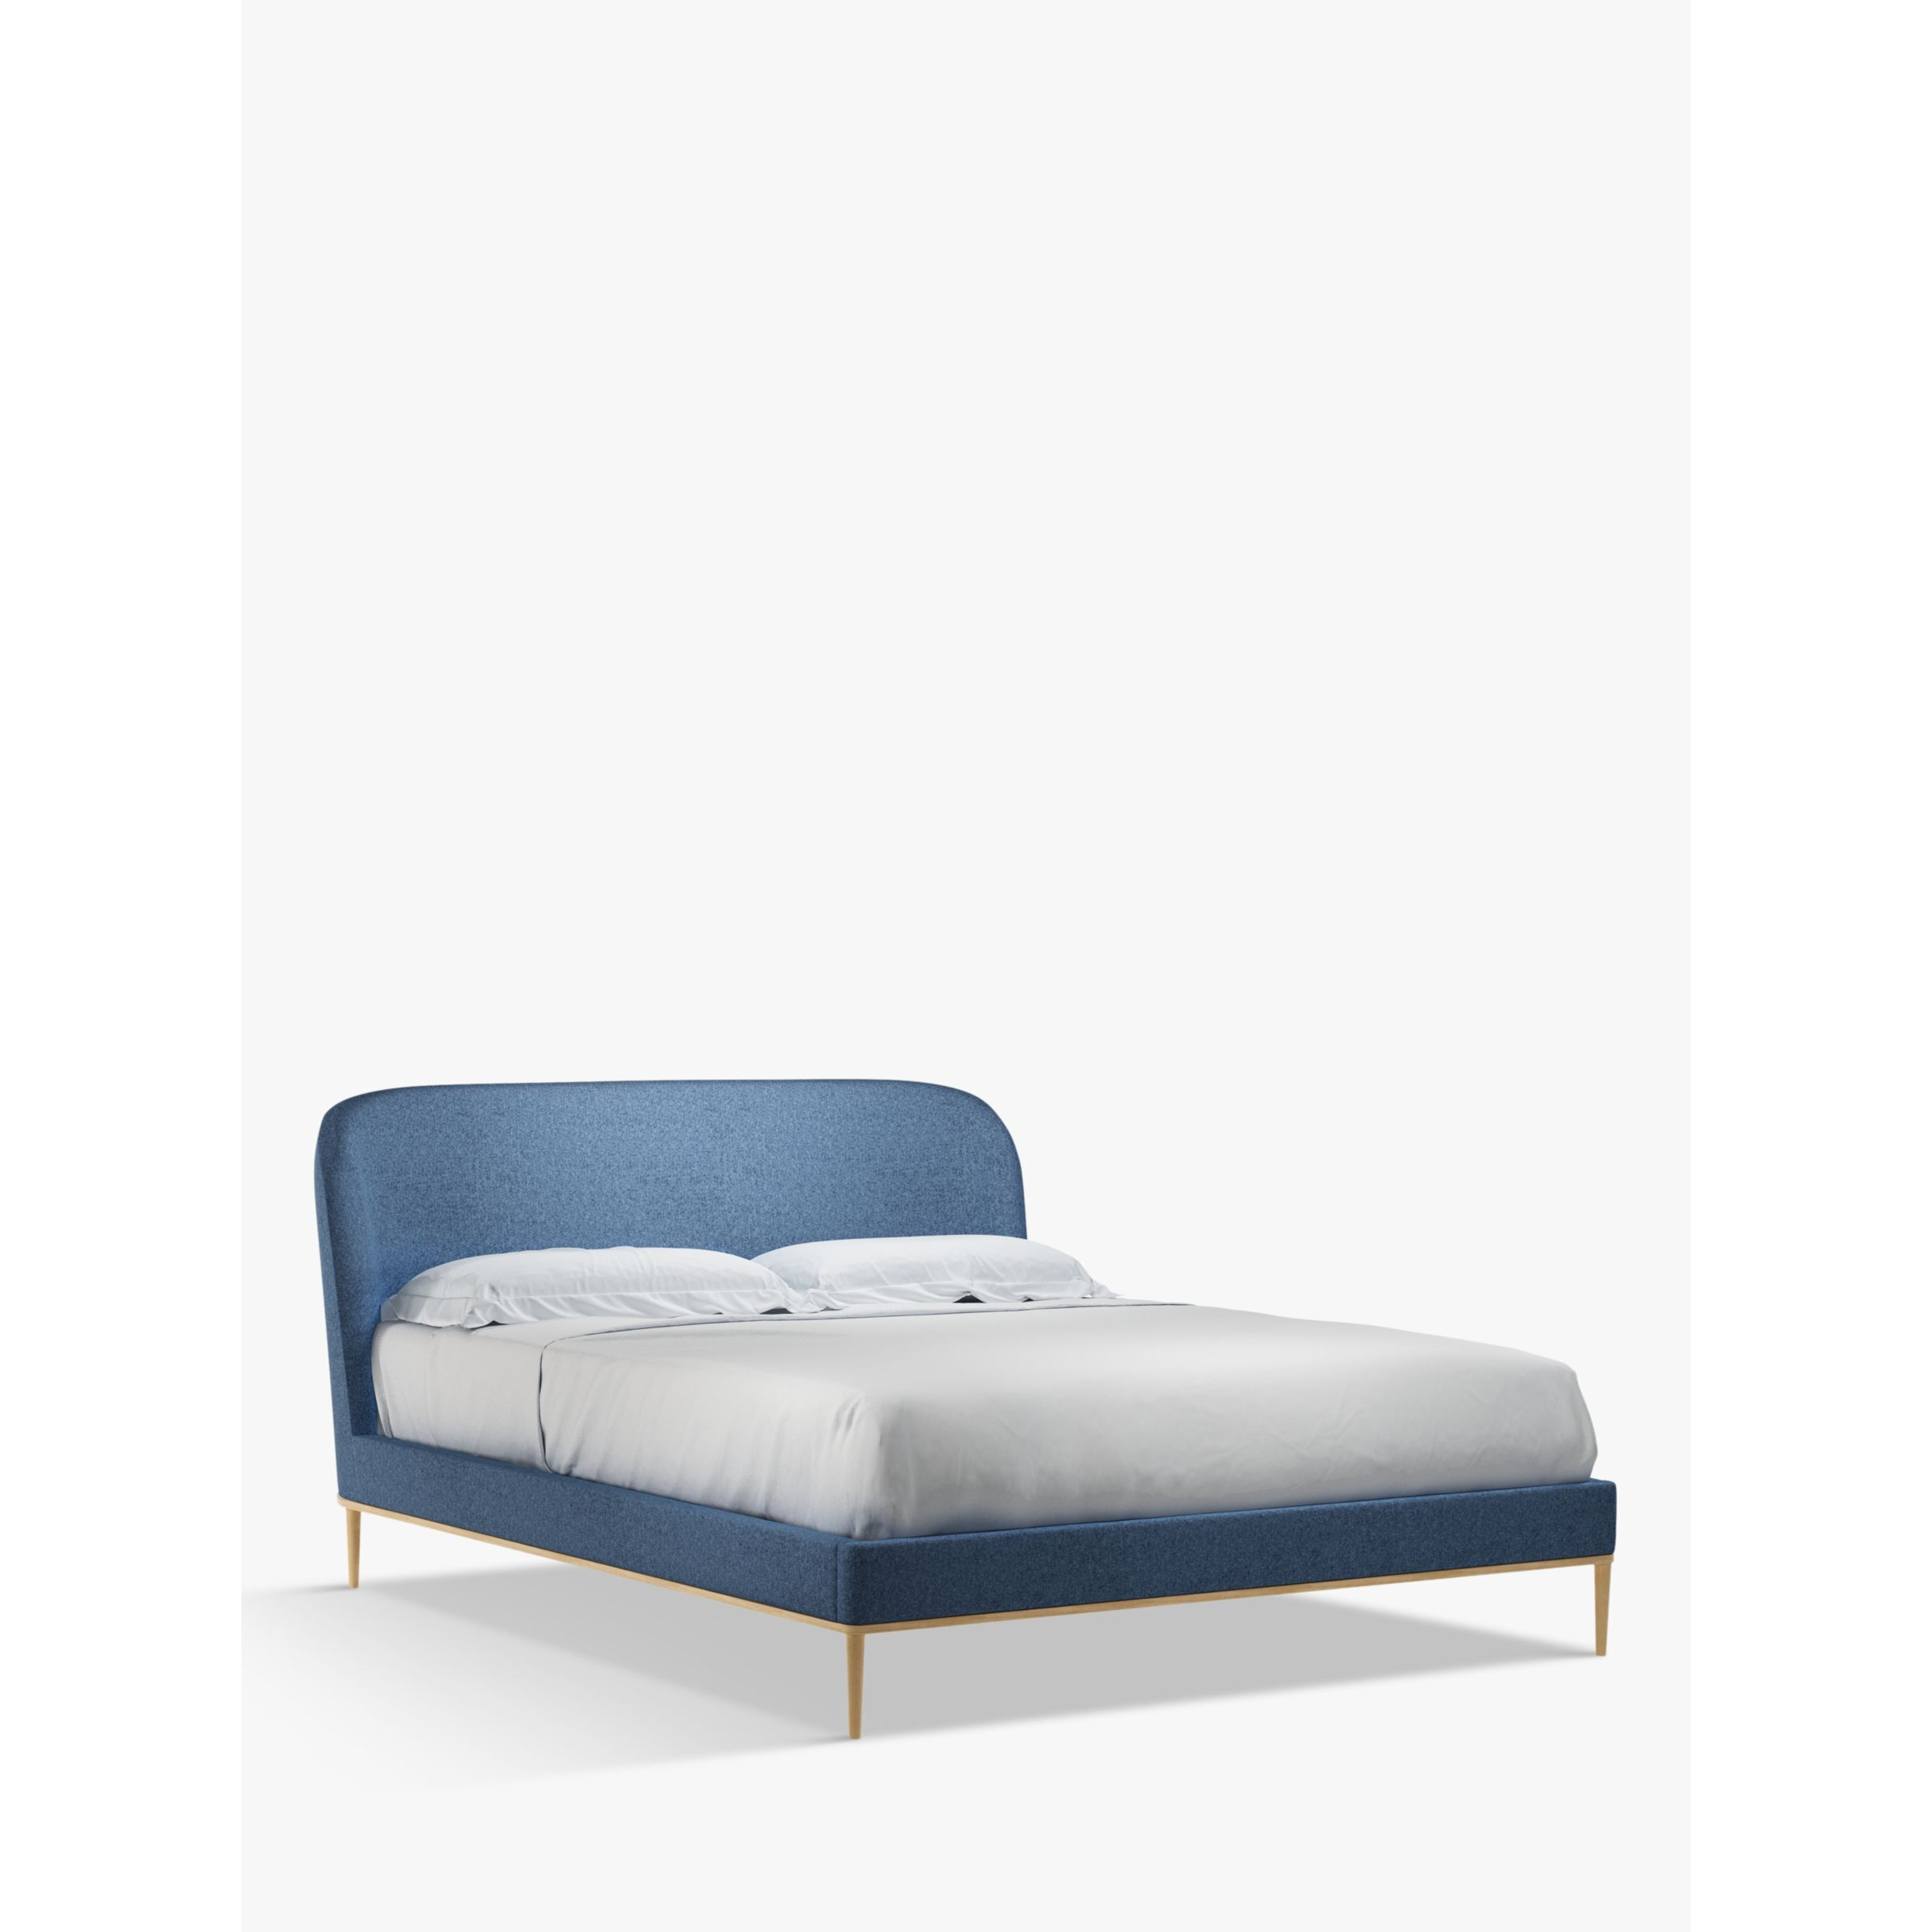 John Lewis Show-Wood Upholstered Bed Frame, King Size - image 1